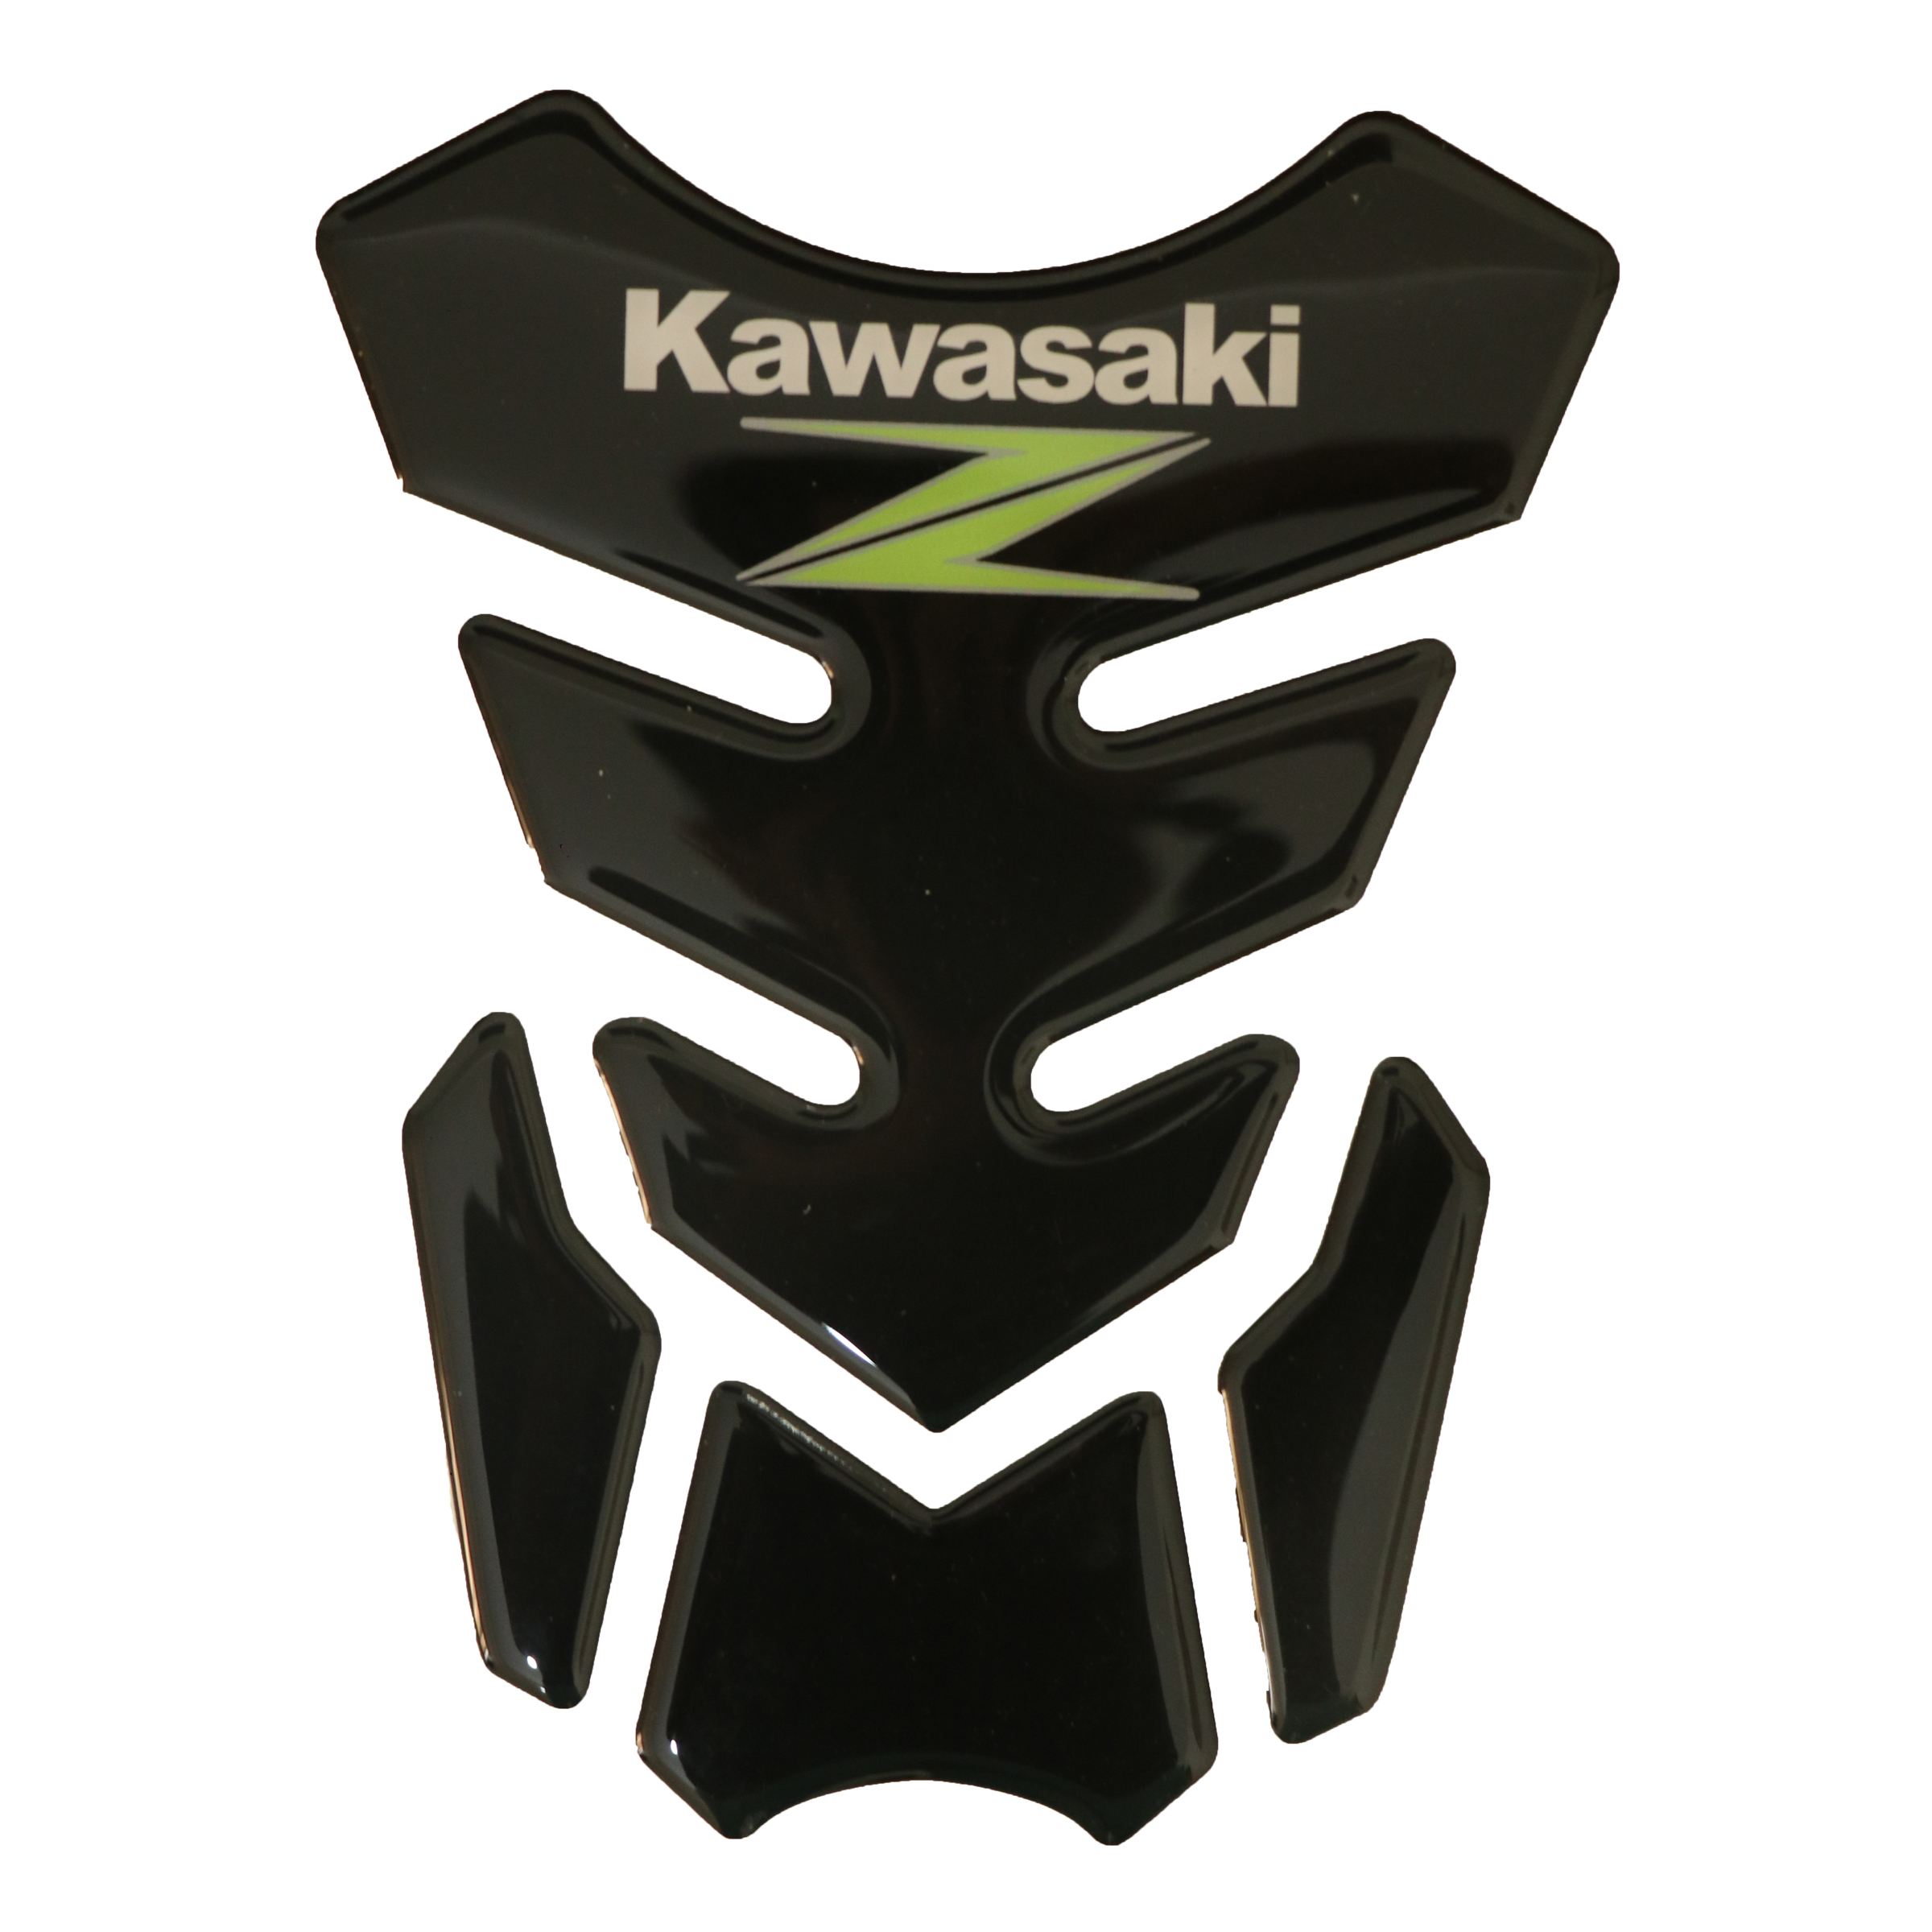  برچسب باک موتور سیکلت کاوازاکی مدل 143 مناسب برای کاوازاکی